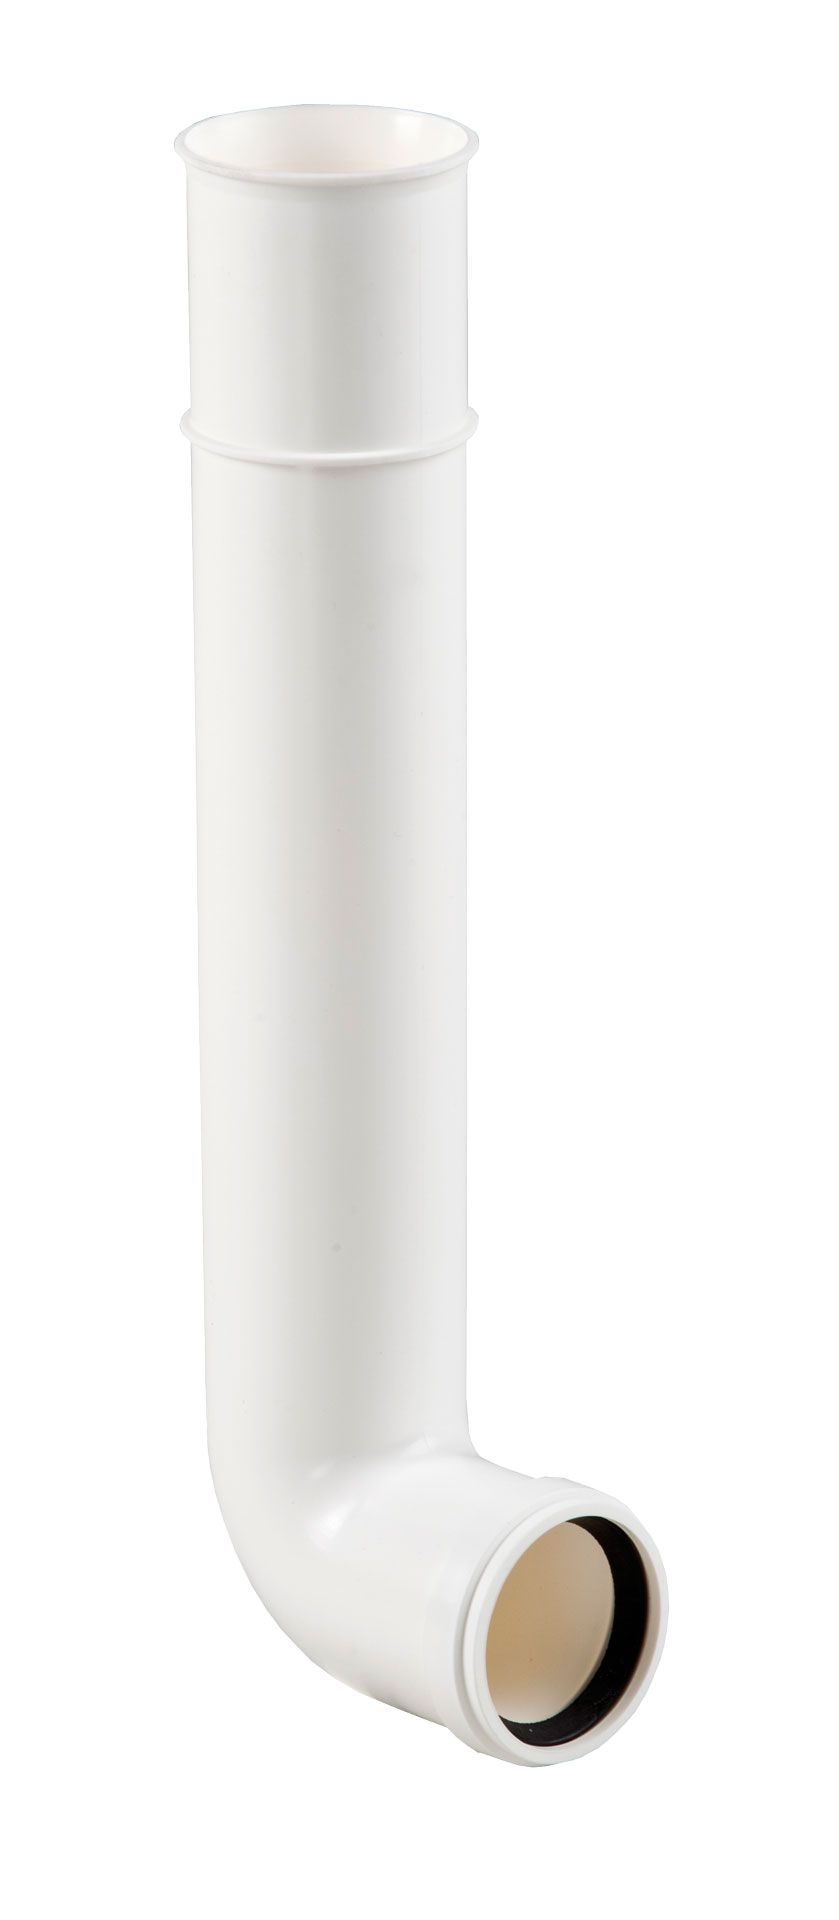 Flush pipe elbow 300 x 70 mm, white